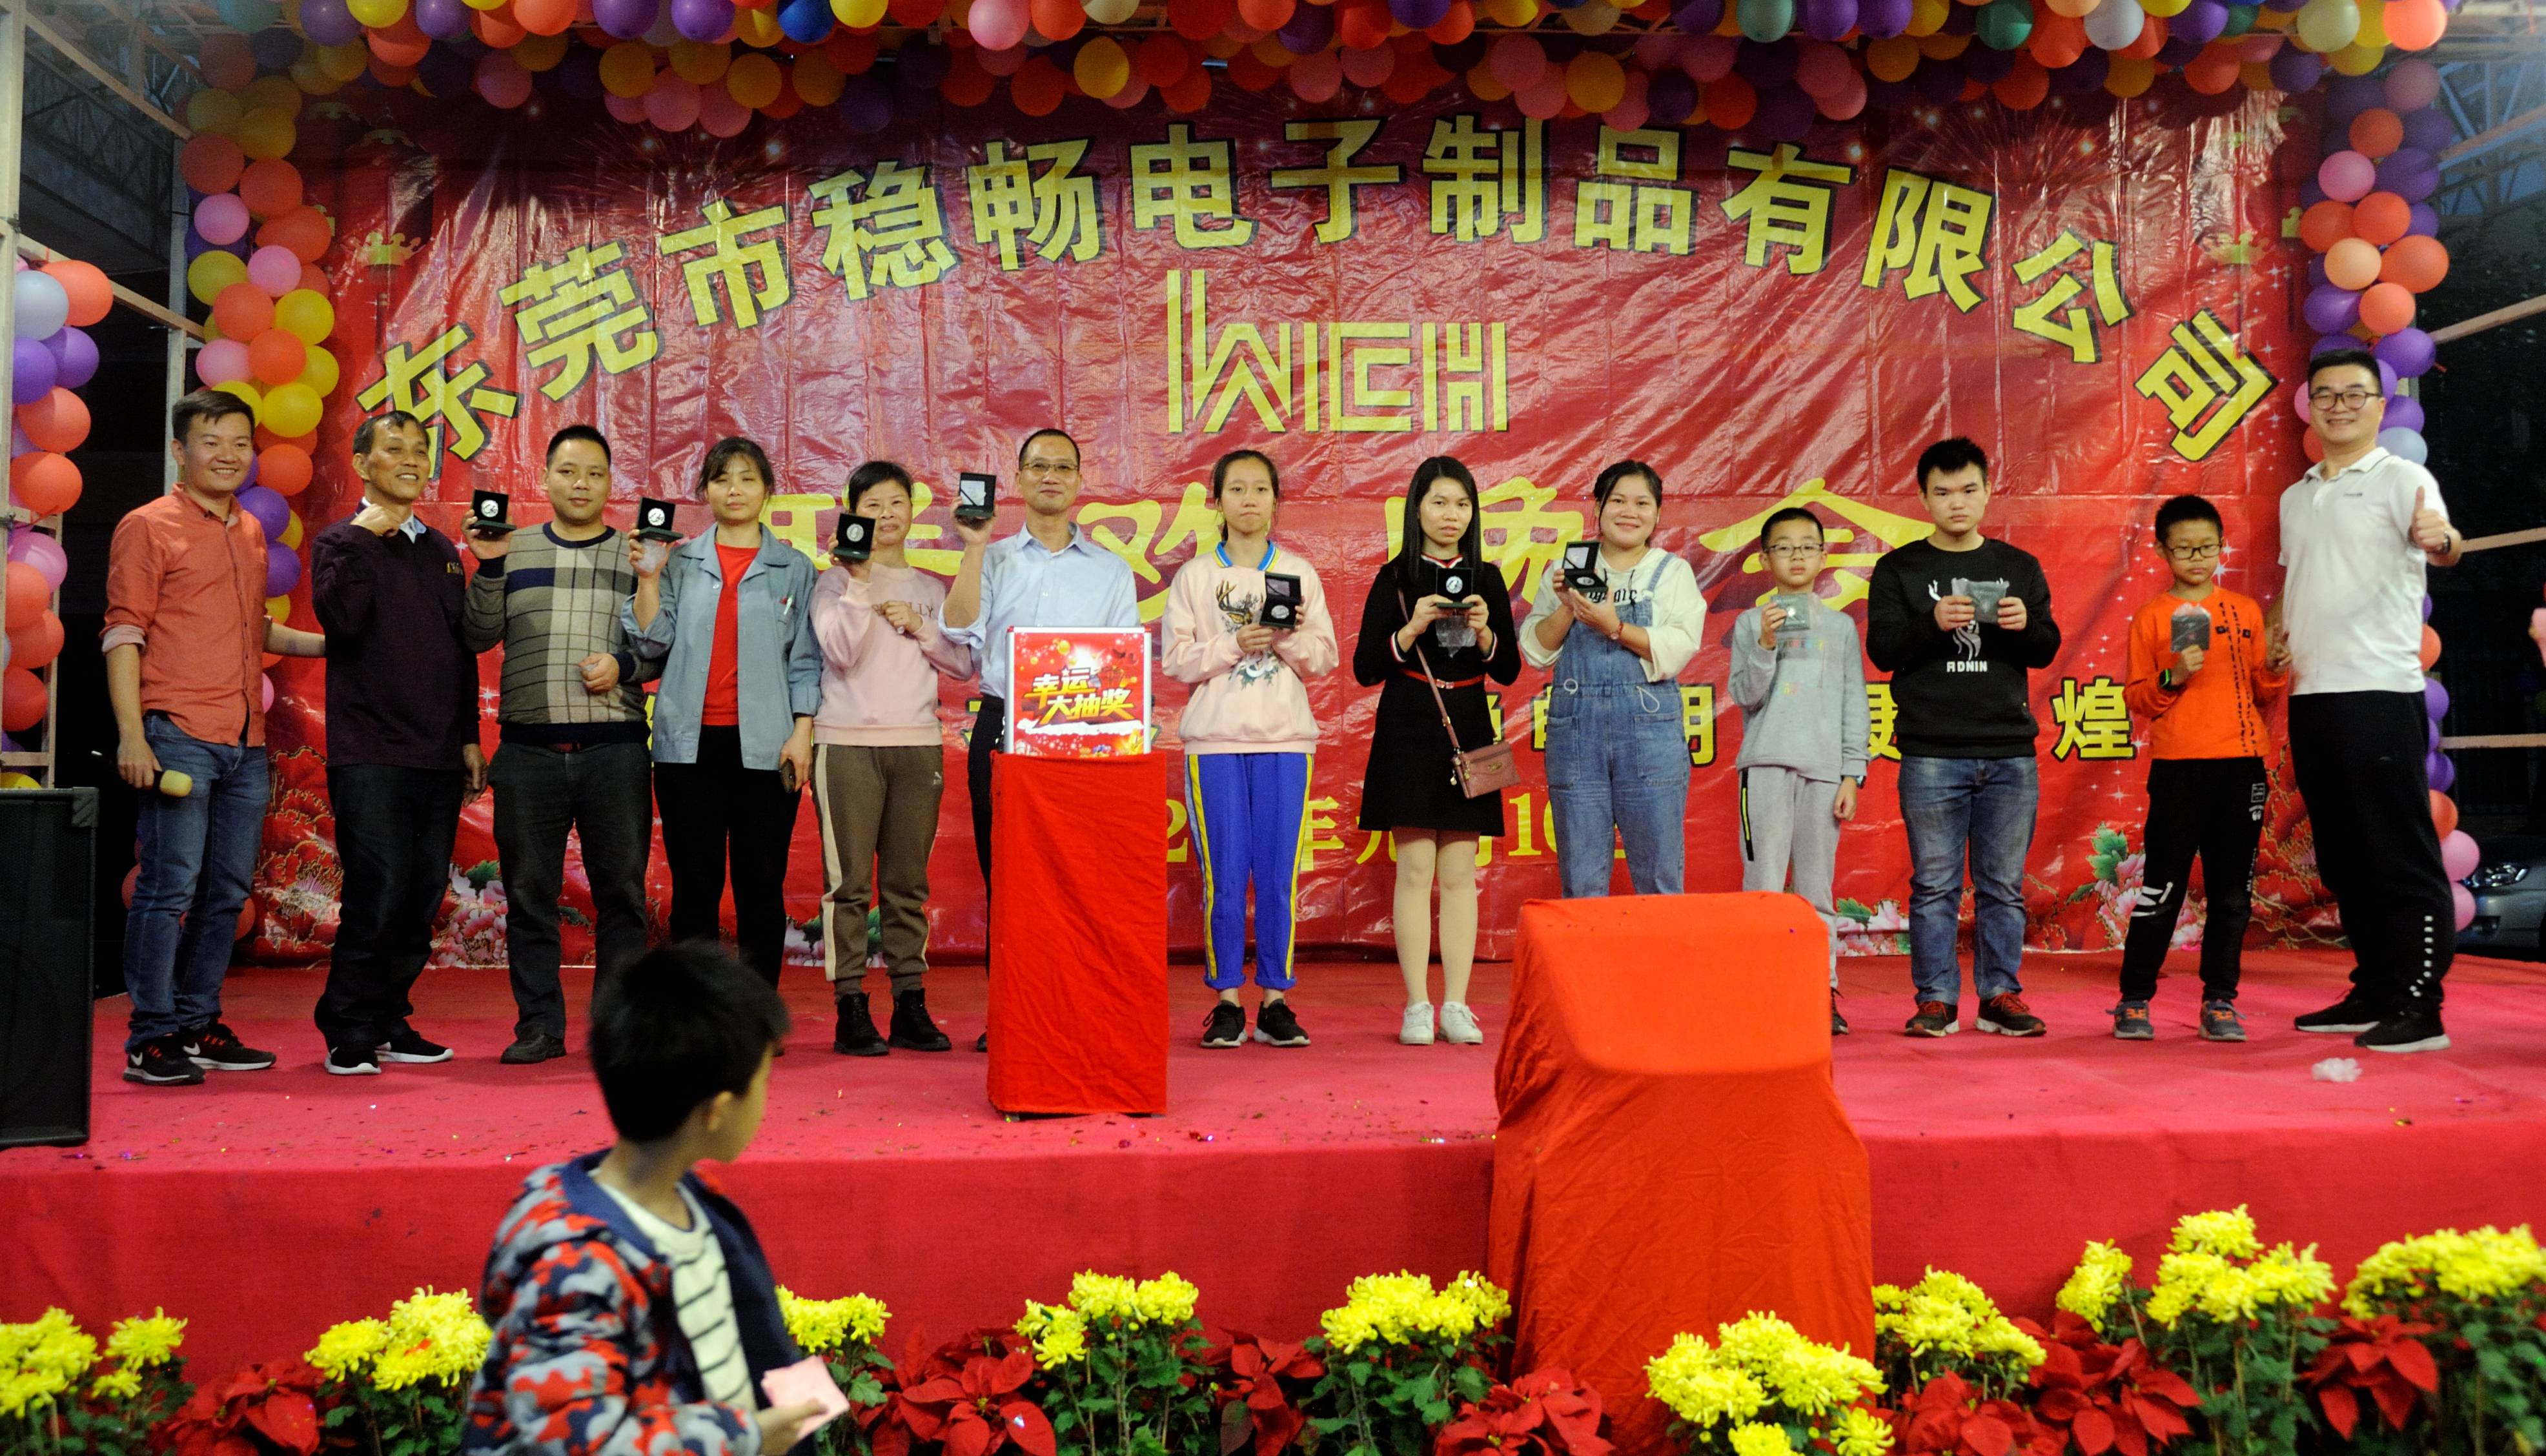 Wenchang компаниясы 2020-жаңы жылды майрамдоо үчүн кече өткөрдү